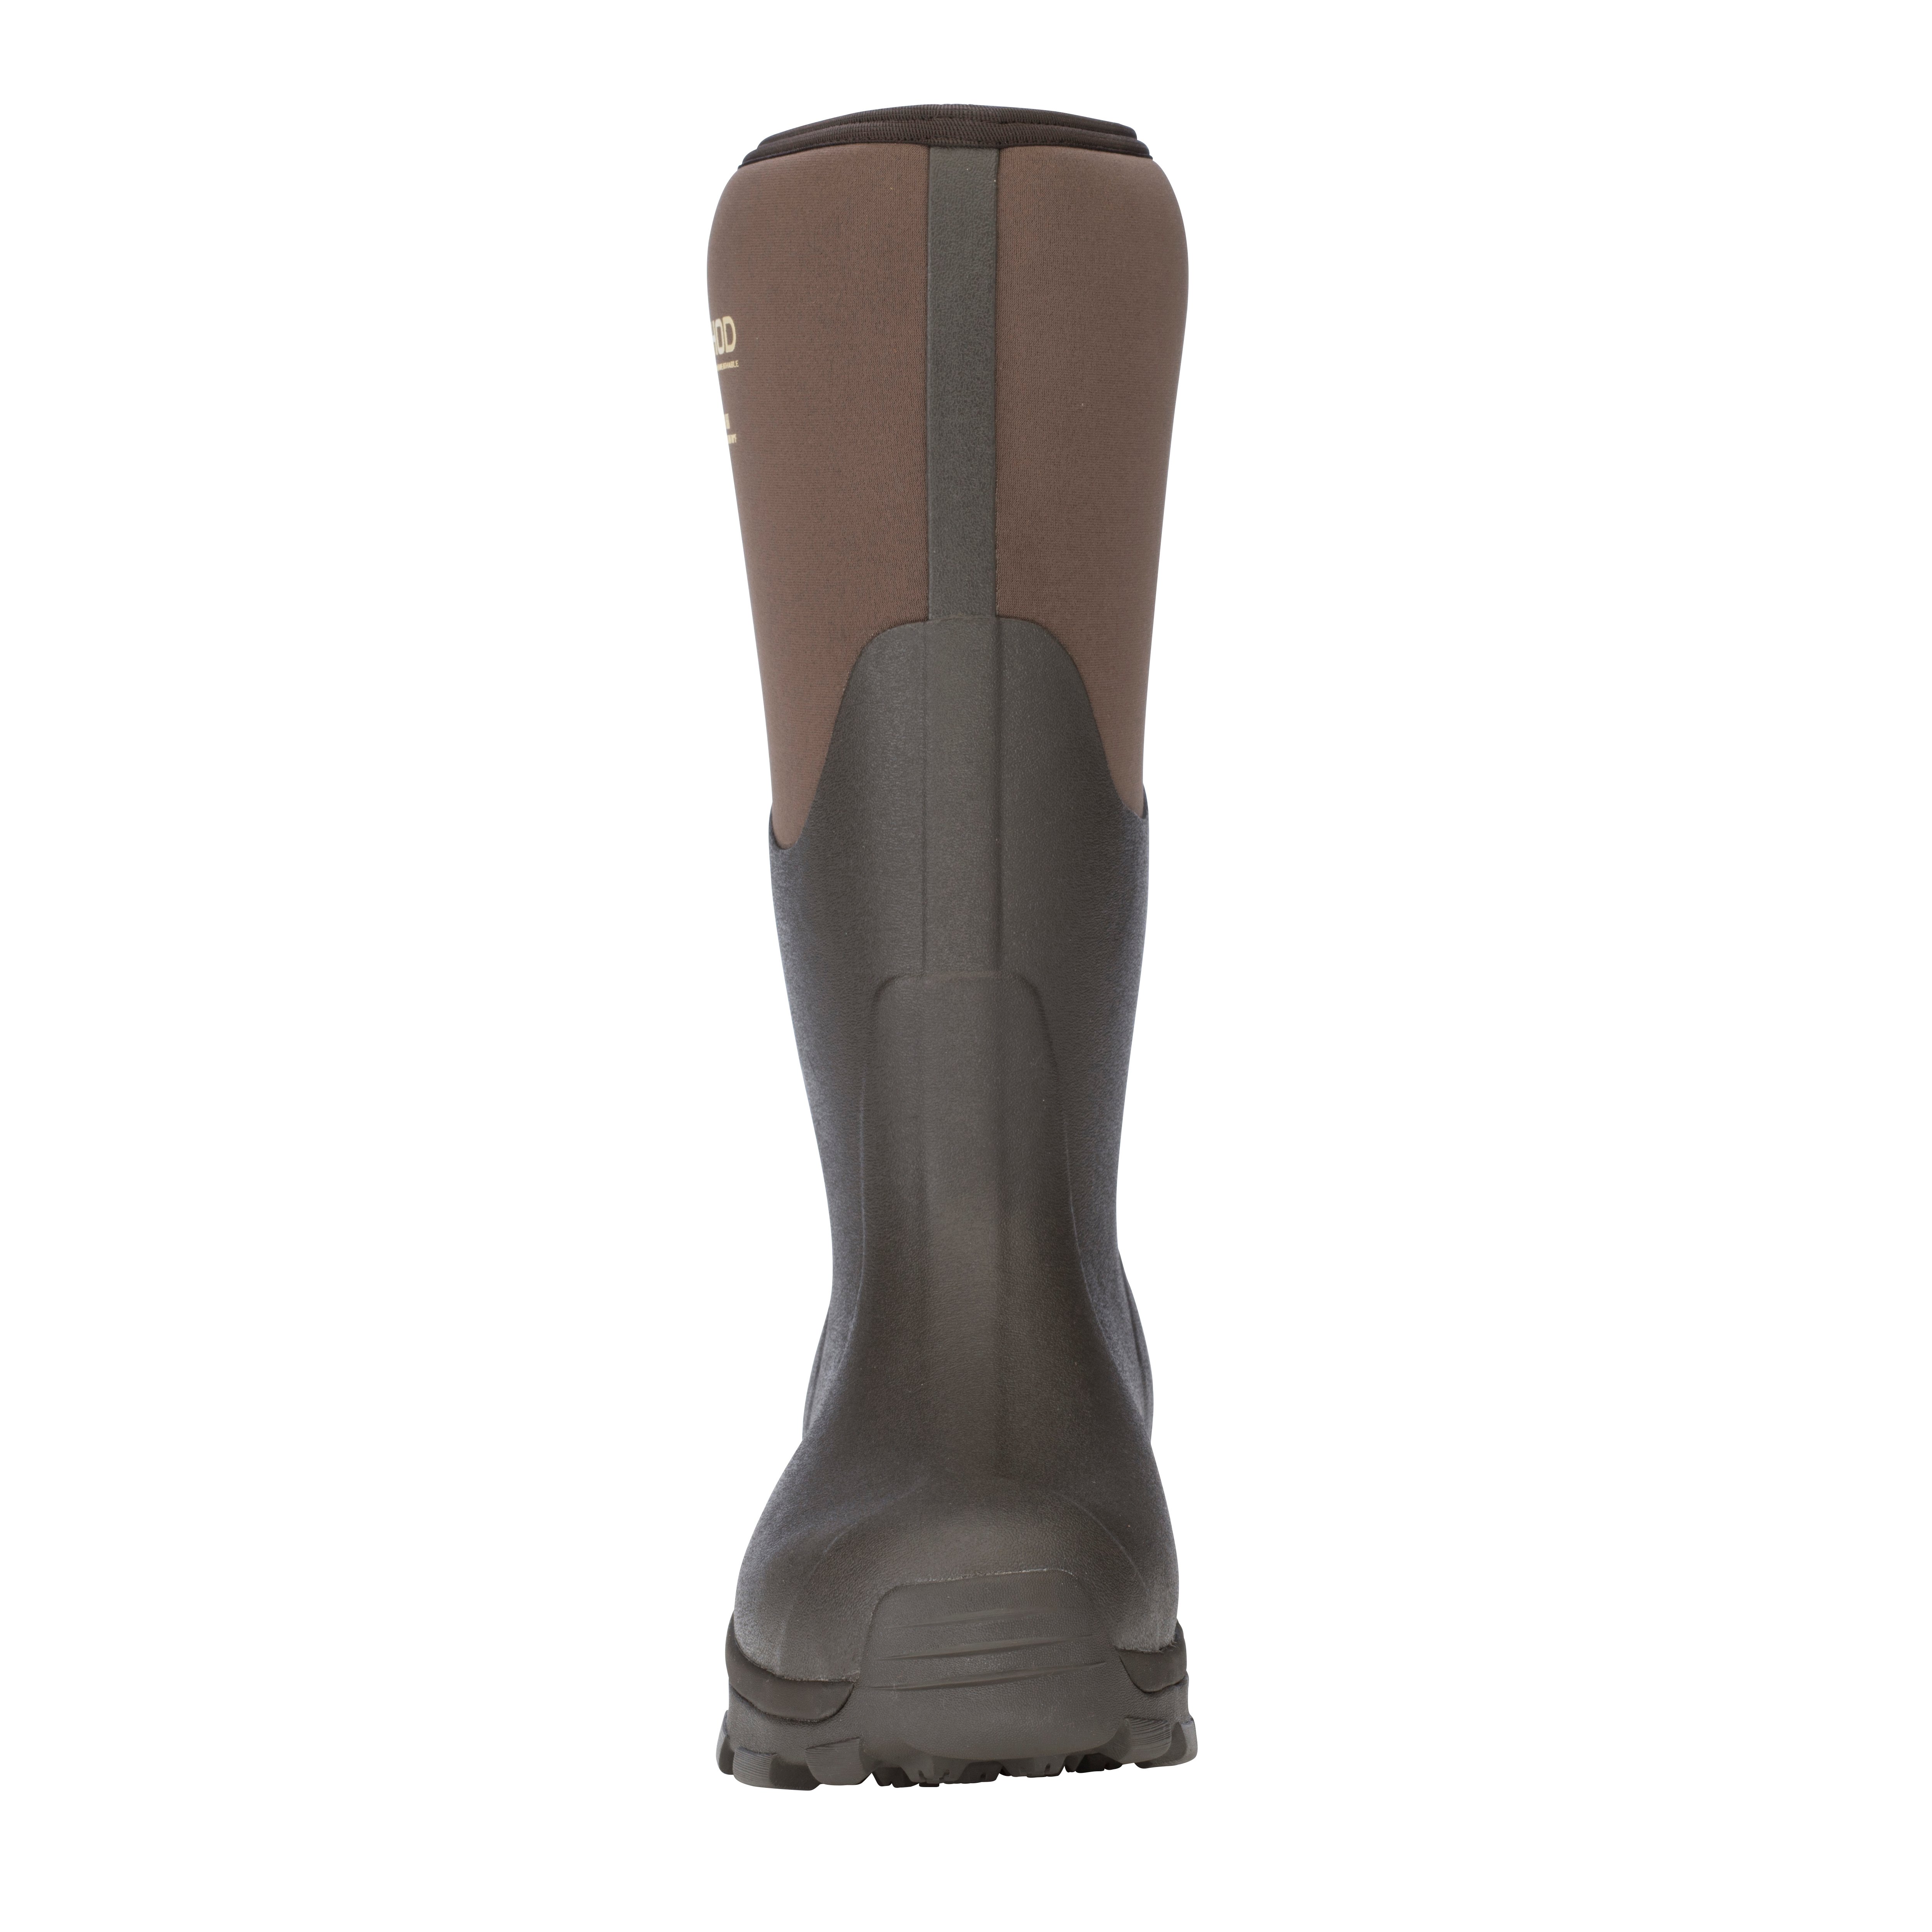 Overland Men’s Premium Outdoor Sport Boot – Dryshod Waterproof Boots